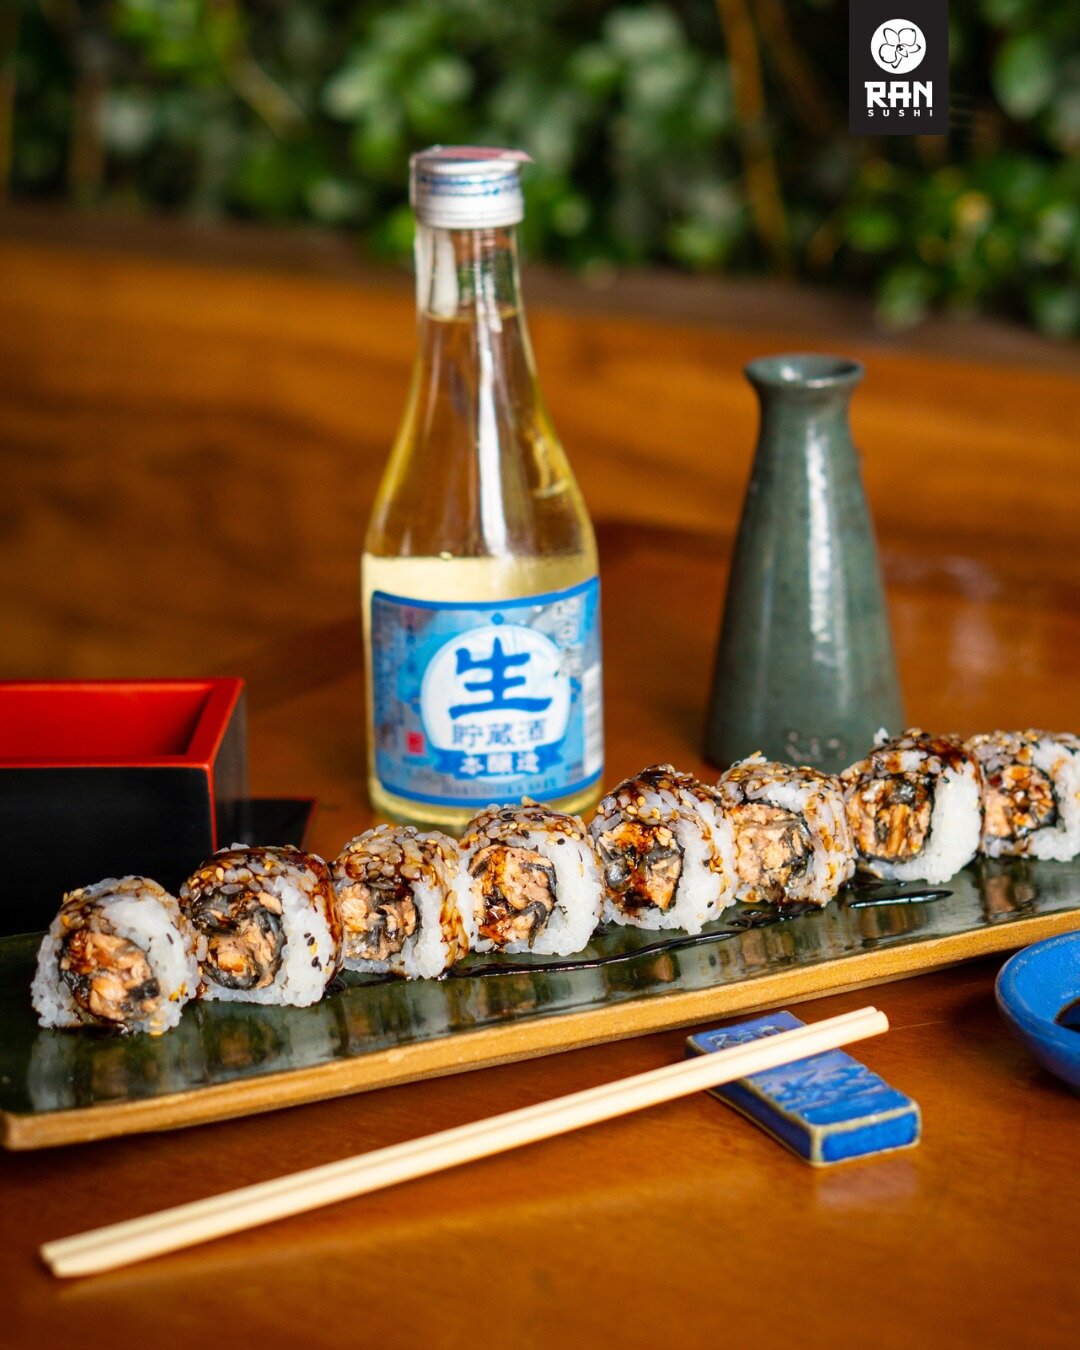 Descubra a del&iacute;cia do Uramaki Ebiten do Ran Sushi! 🍣

&Eacute; uma op&ccedil;&atilde;o irresist&iacute;vel para os amantes de camar&atilde;o e sushi. Com arroz por fora e alga por dentro, esse rolinho &eacute; recheado com camar&otilde;es emp